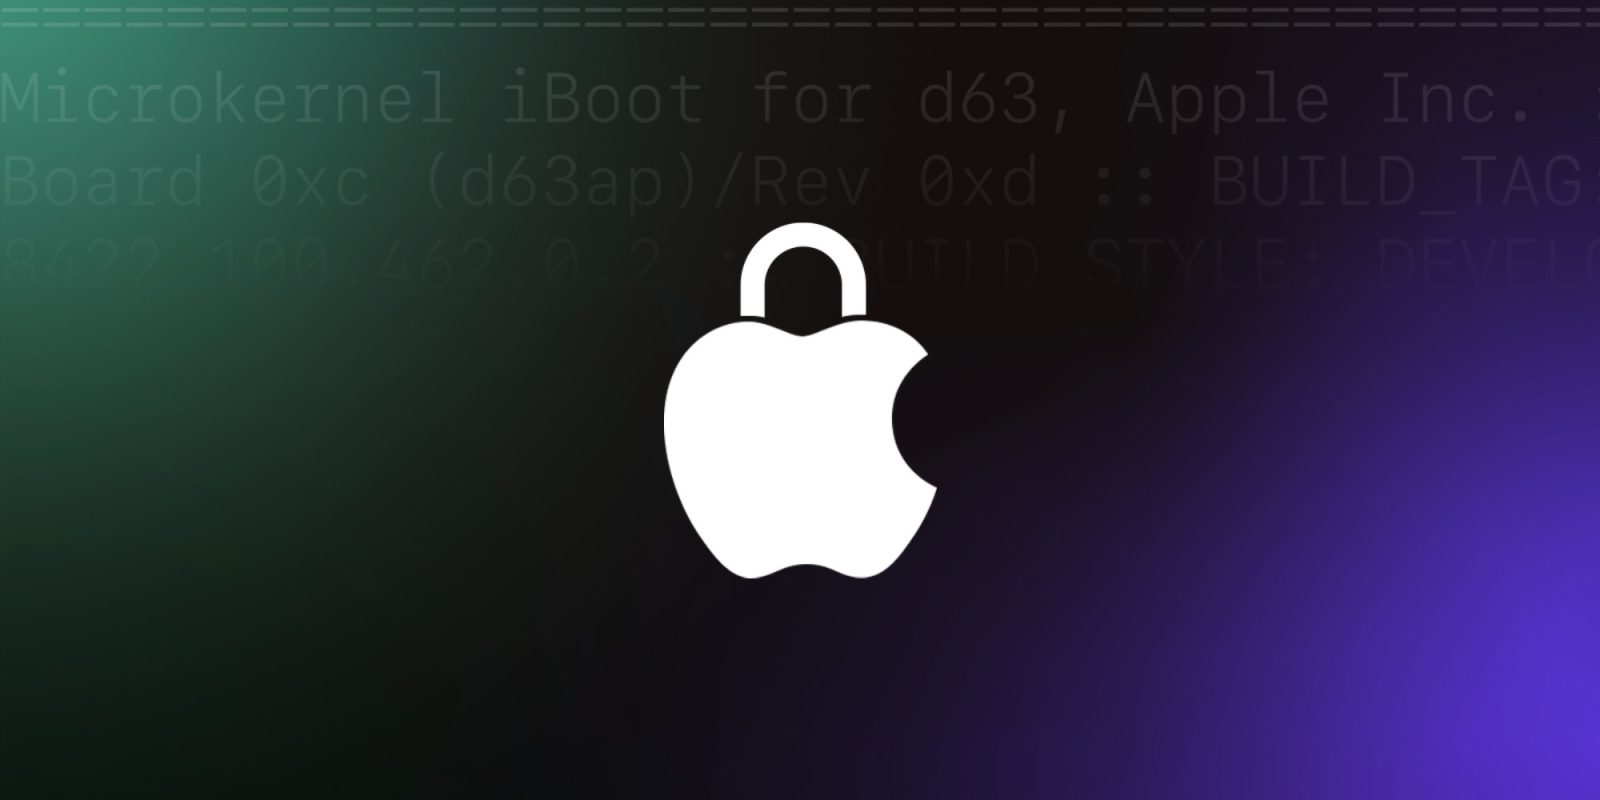 Эксплойт macOS, обнаруженный Microsoft, может обойти защиту целостности системы